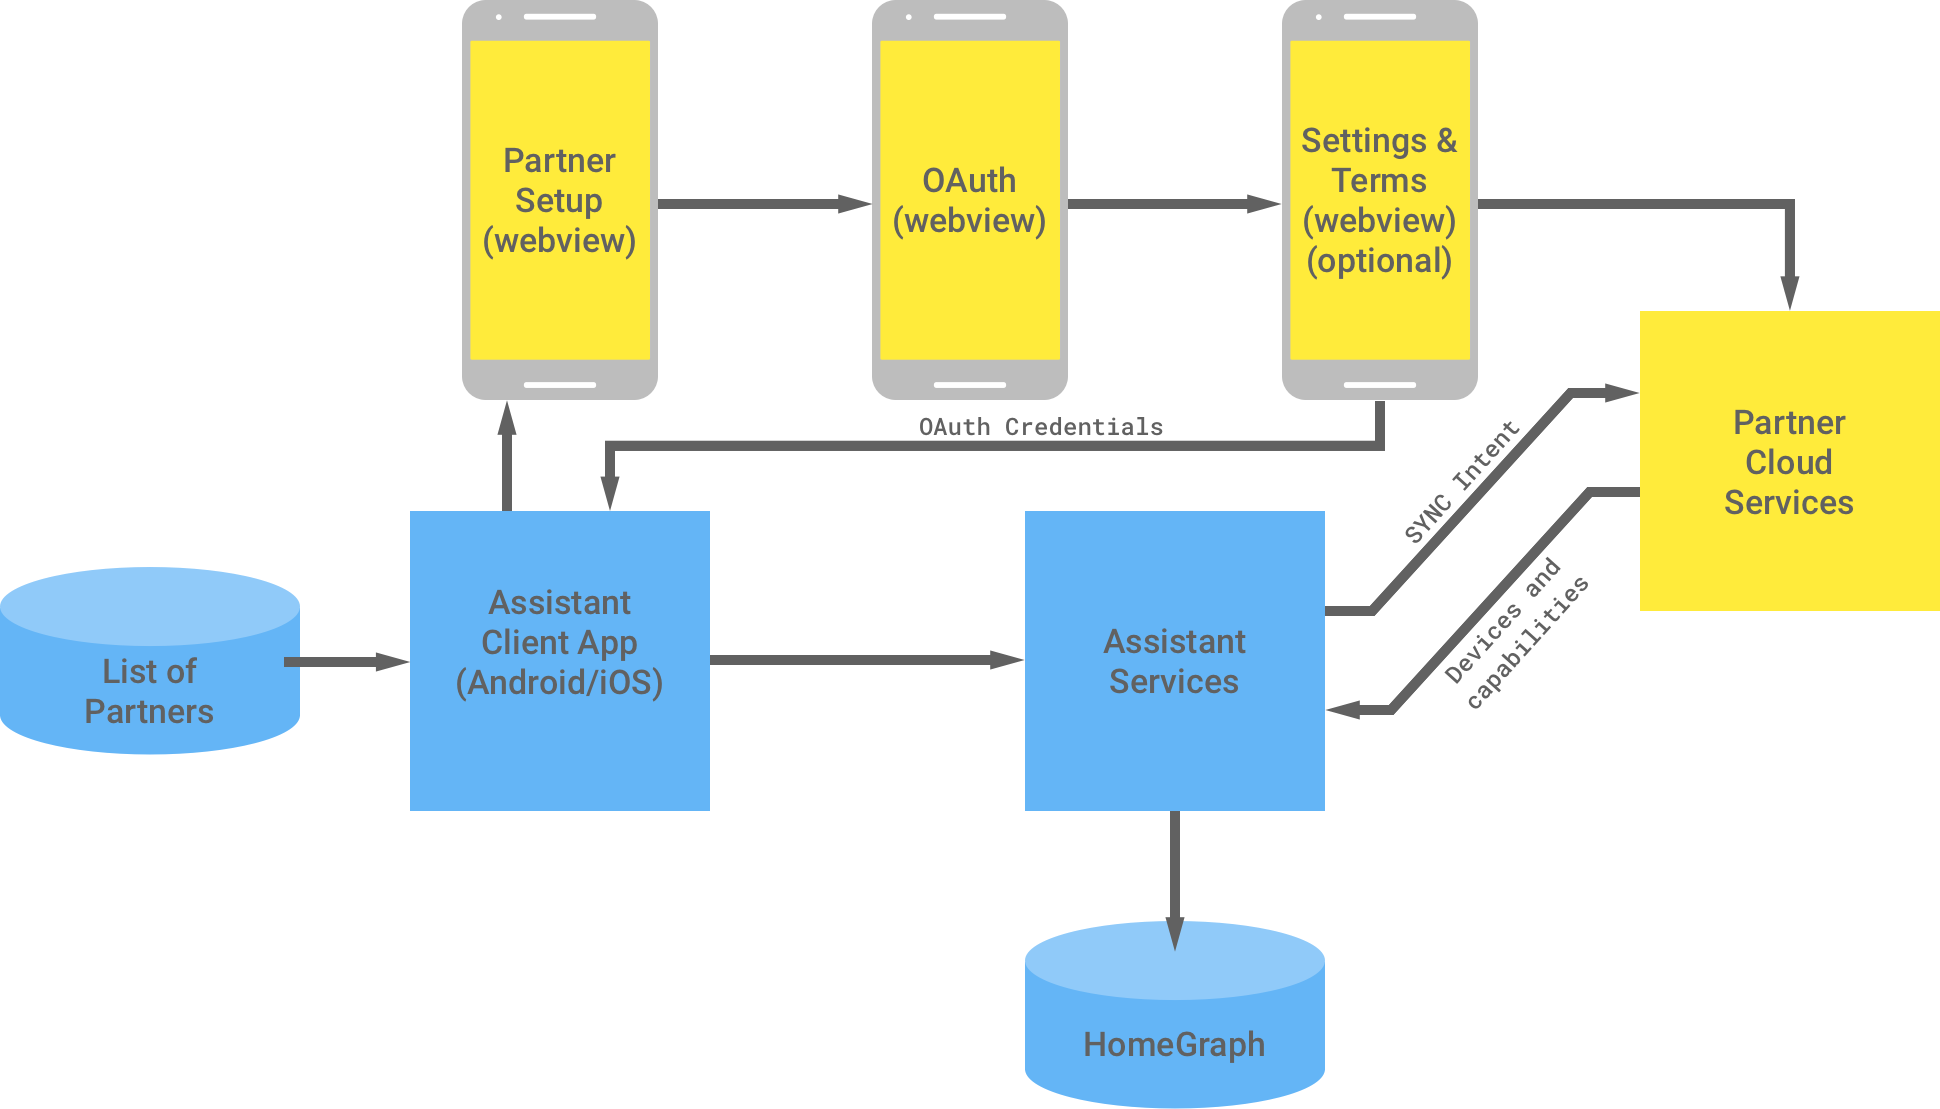 En esta figura, se muestra la interacción entre la infraestructura de Google y la del socio. En la infraestructura de Google, hay una lista de socios disponibles para la app cliente del Asistente, que luego fluye a la infraestructura del socio para completar la autenticación de OAuth. La autenticación de OAuth del lado del socio es la vista web de configuración del socio, la vista web de OAuth, las condiciones de configuración y las condiciones opcionales, y los servicios de la nube del socio. La infraestructura del socio muestra las credenciales de OAuth a la app cliente de Asistente. Los servicios en la nube del socio envían los dispositivos y las capacidades disponibles a los servicios de Asistente, que luego almacenan la información en Home Graph.